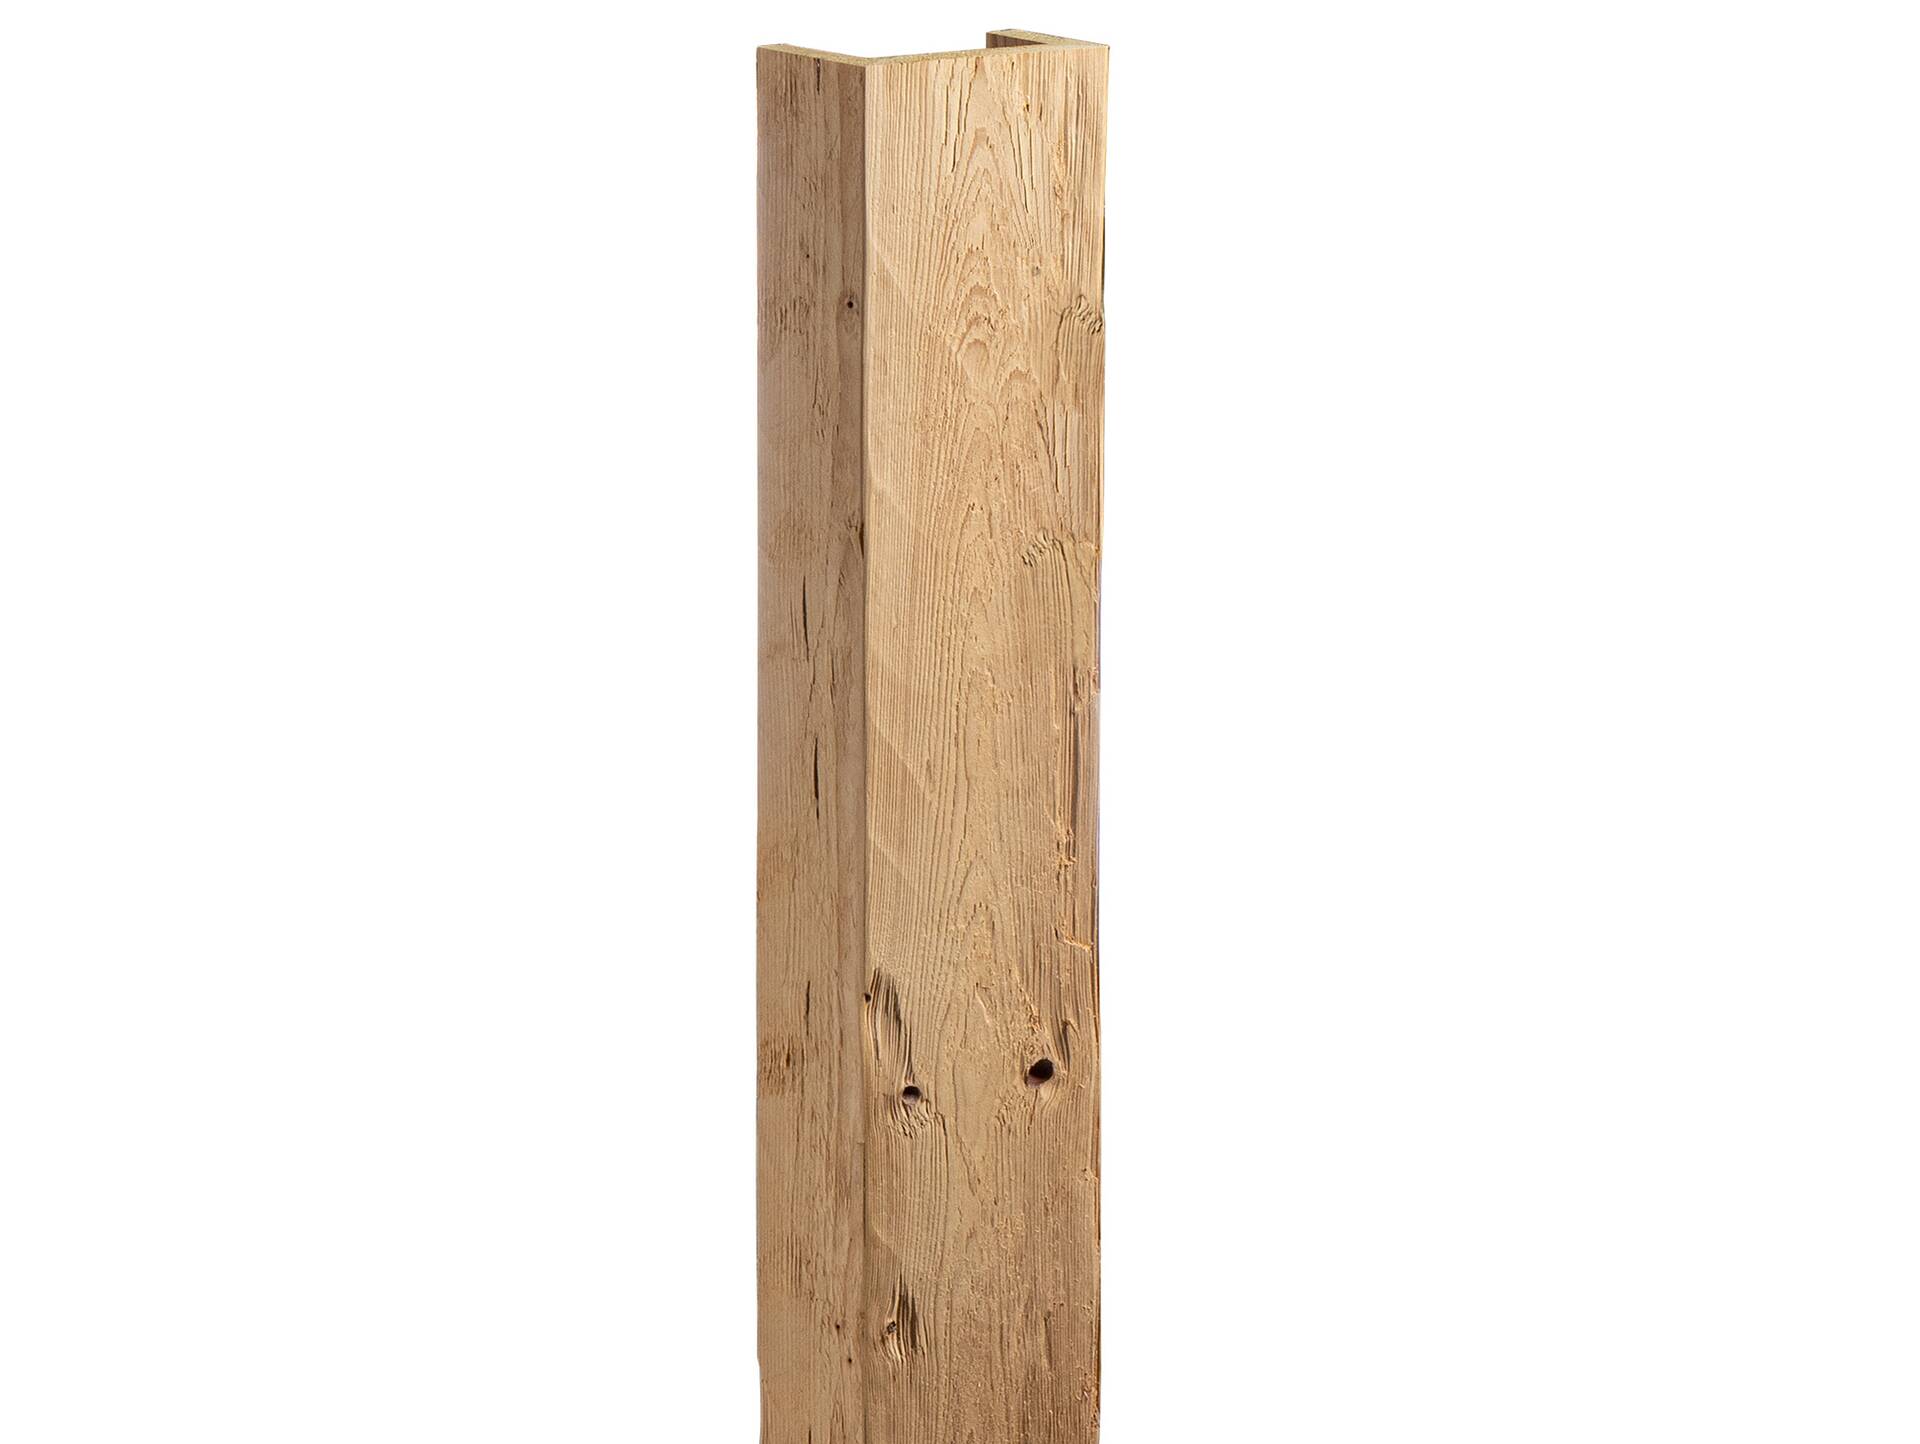 THERMO-U-Balken / Zierbalken gehackt aus THERMO-Fichte natur, Material Massivholz 120 x 80 mm | 1 Meter